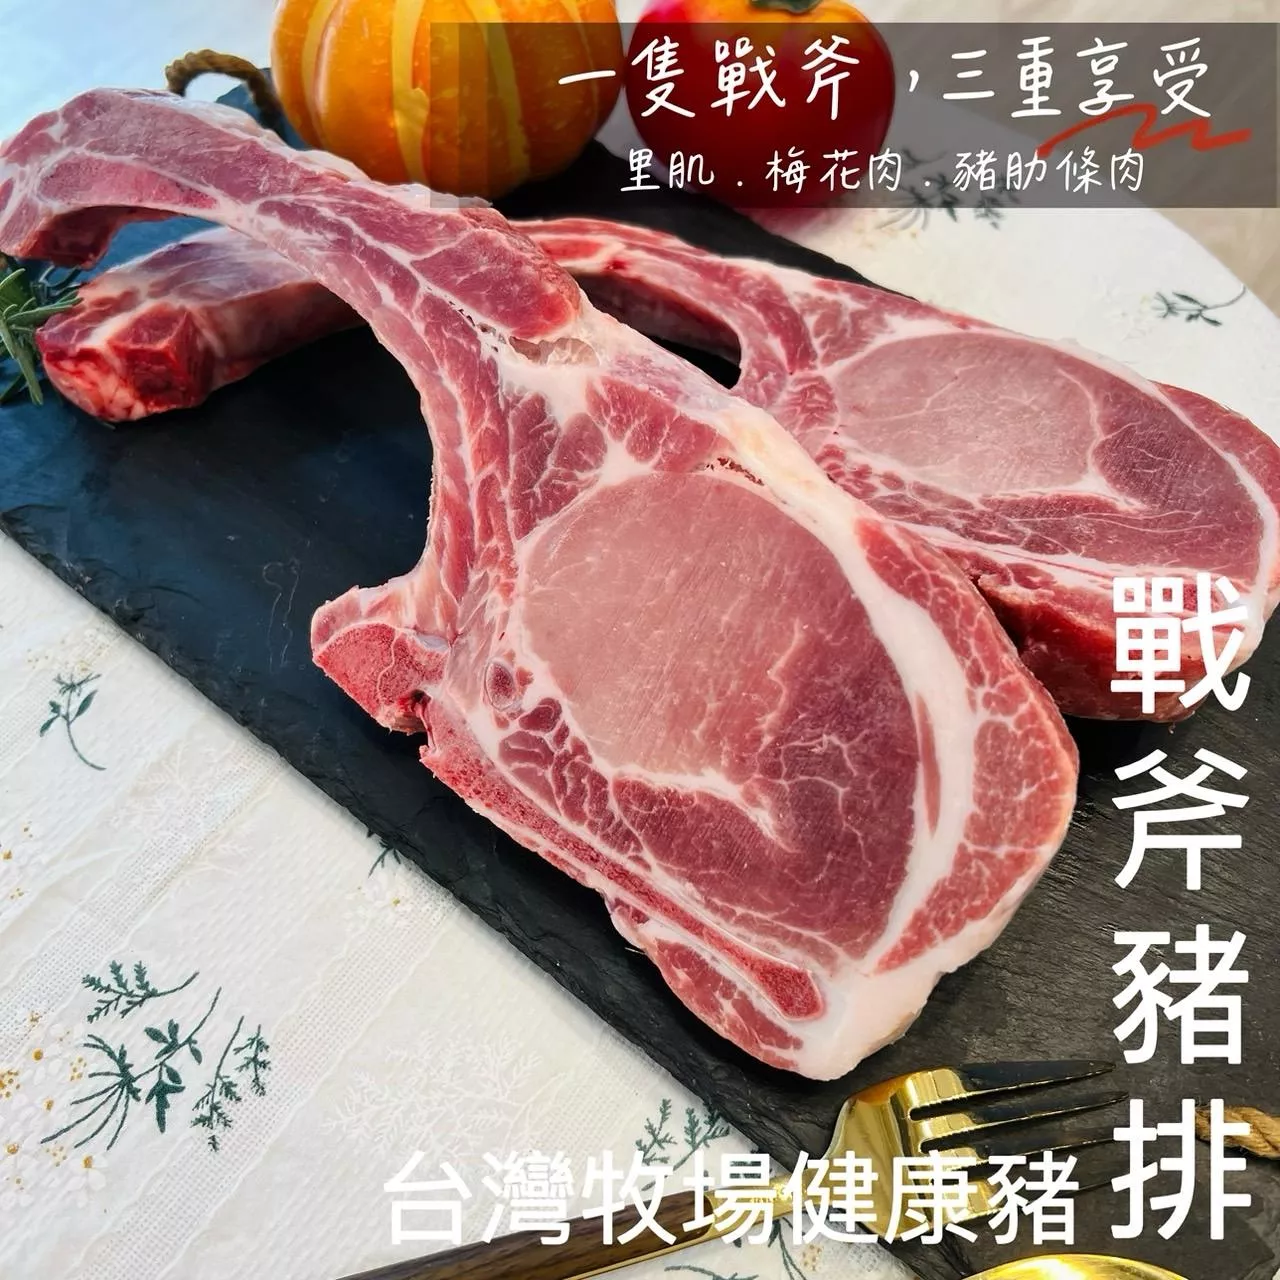 台灣牧場健康豬-戰斧豬排